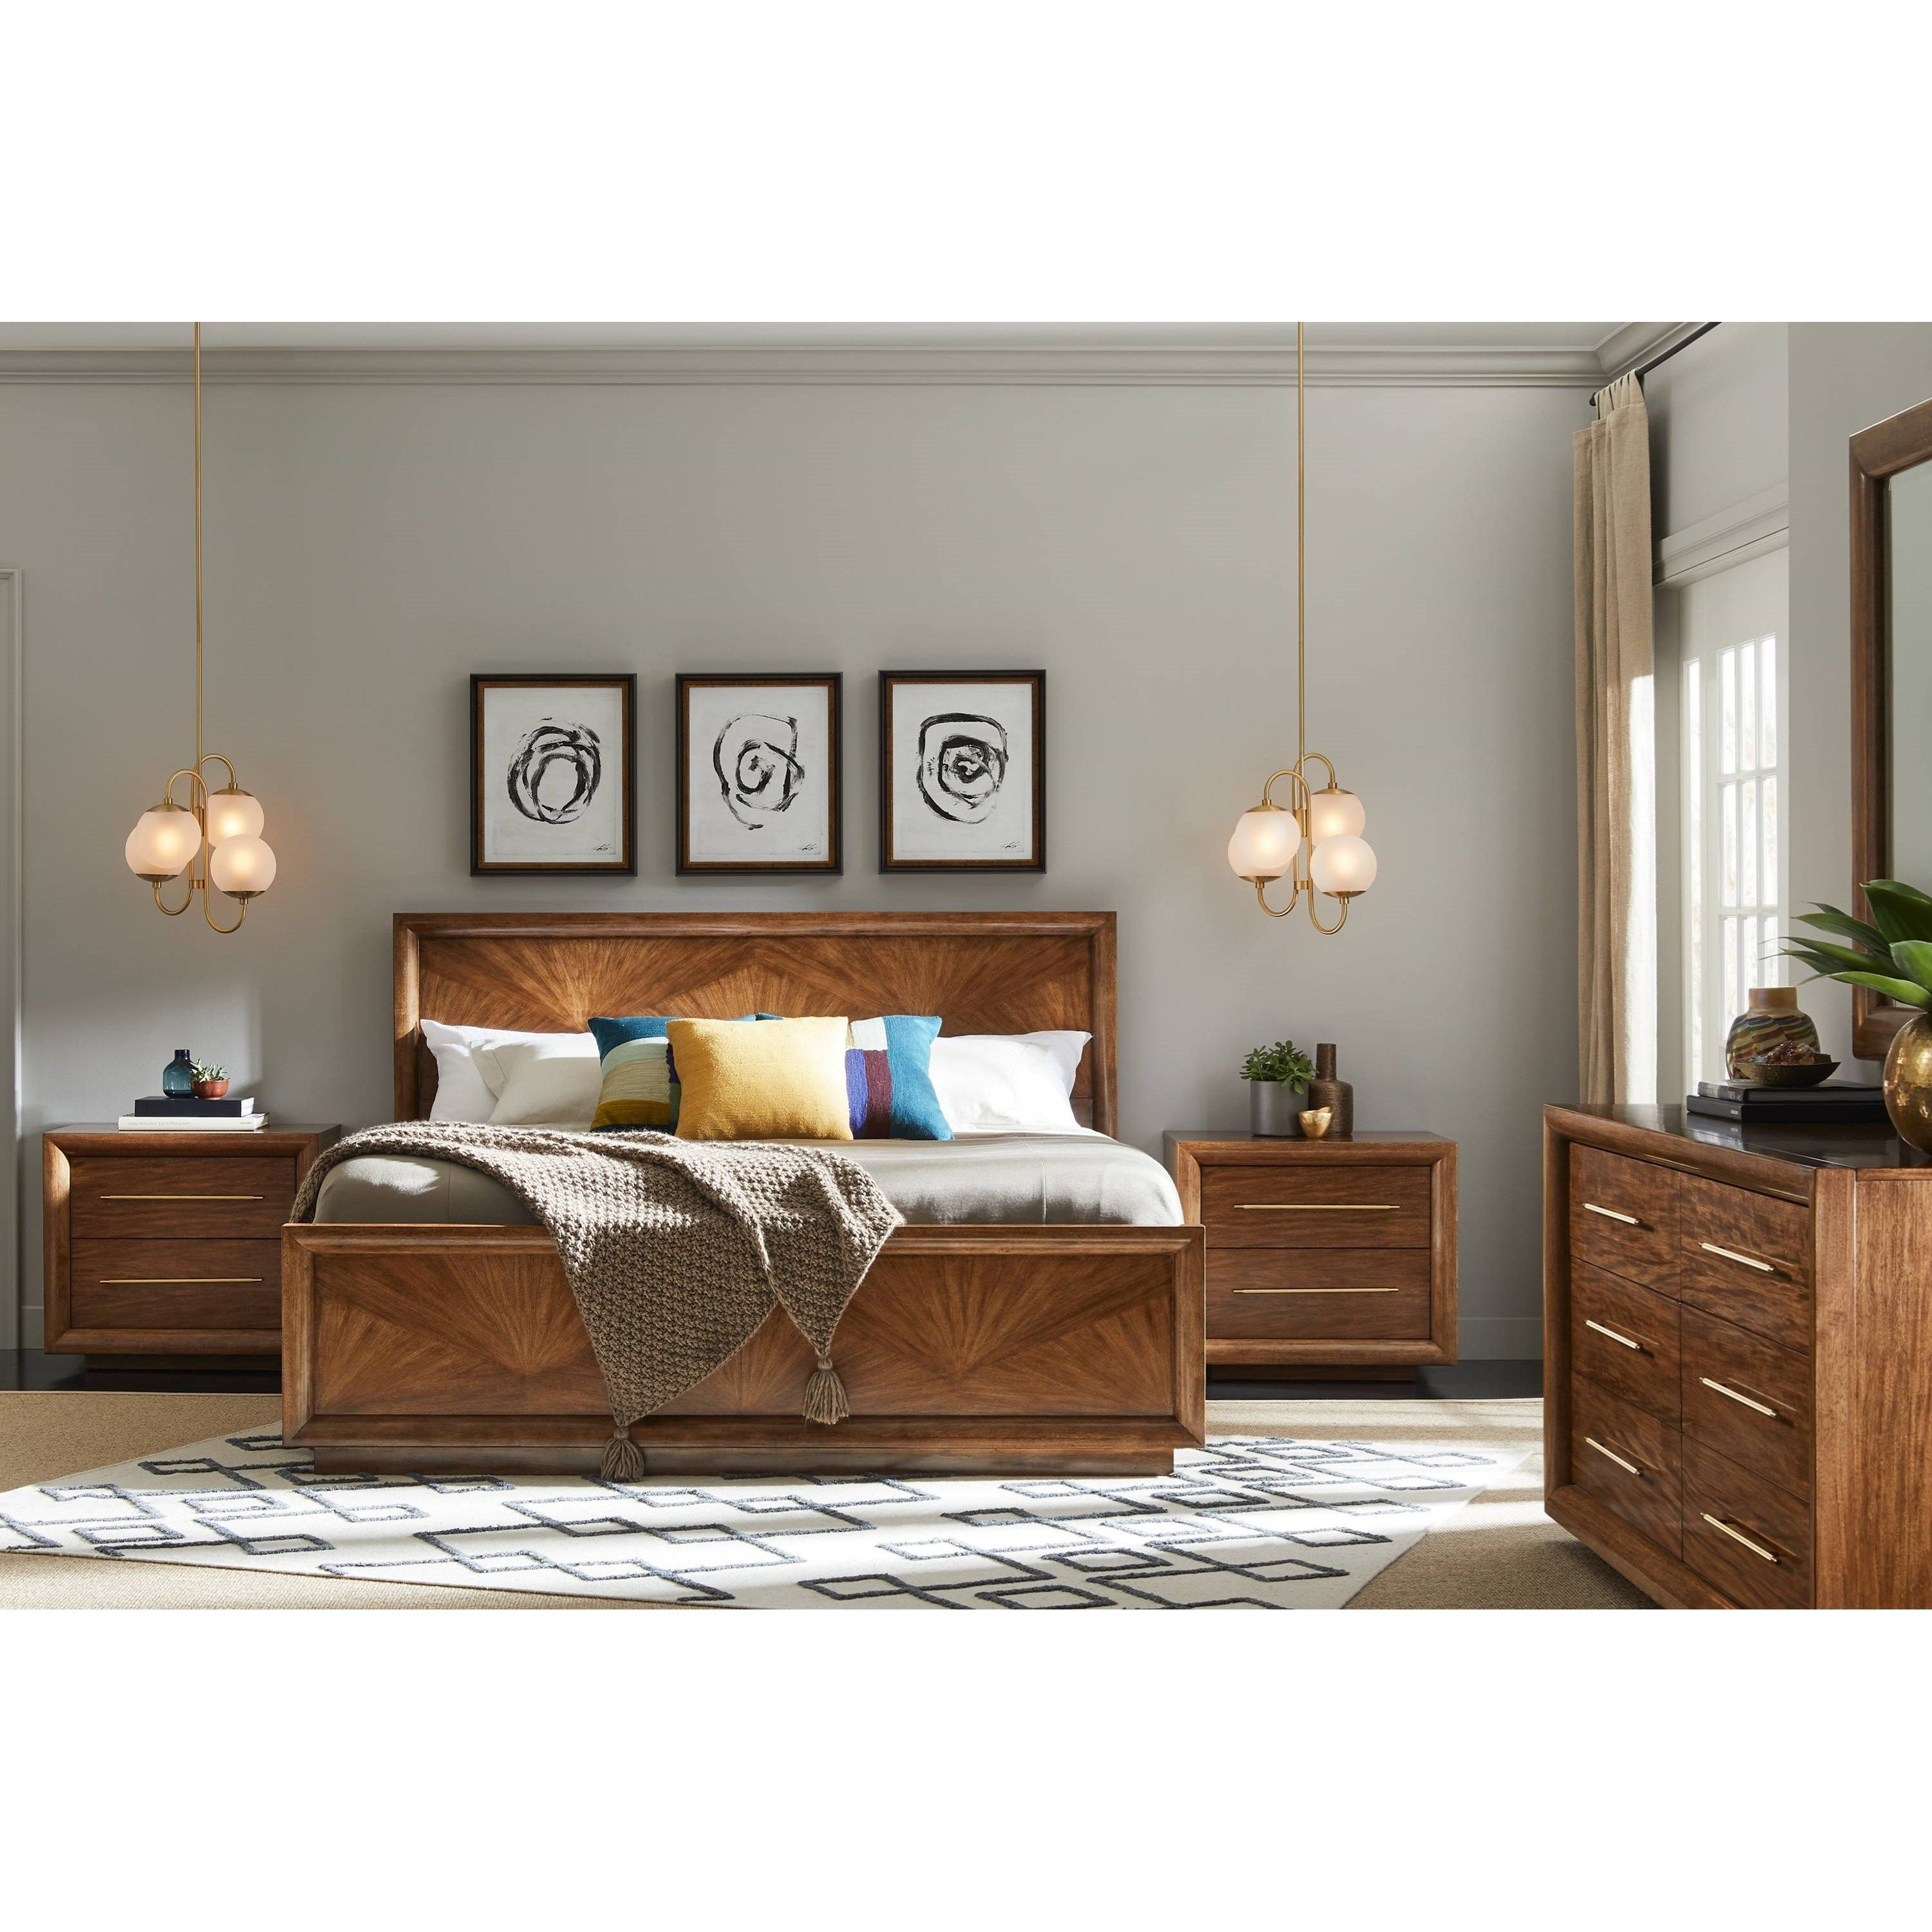 Panavista Queen Bedroom Group Stanley Furniture Home Stanley throughout measurements 3001 X 3001